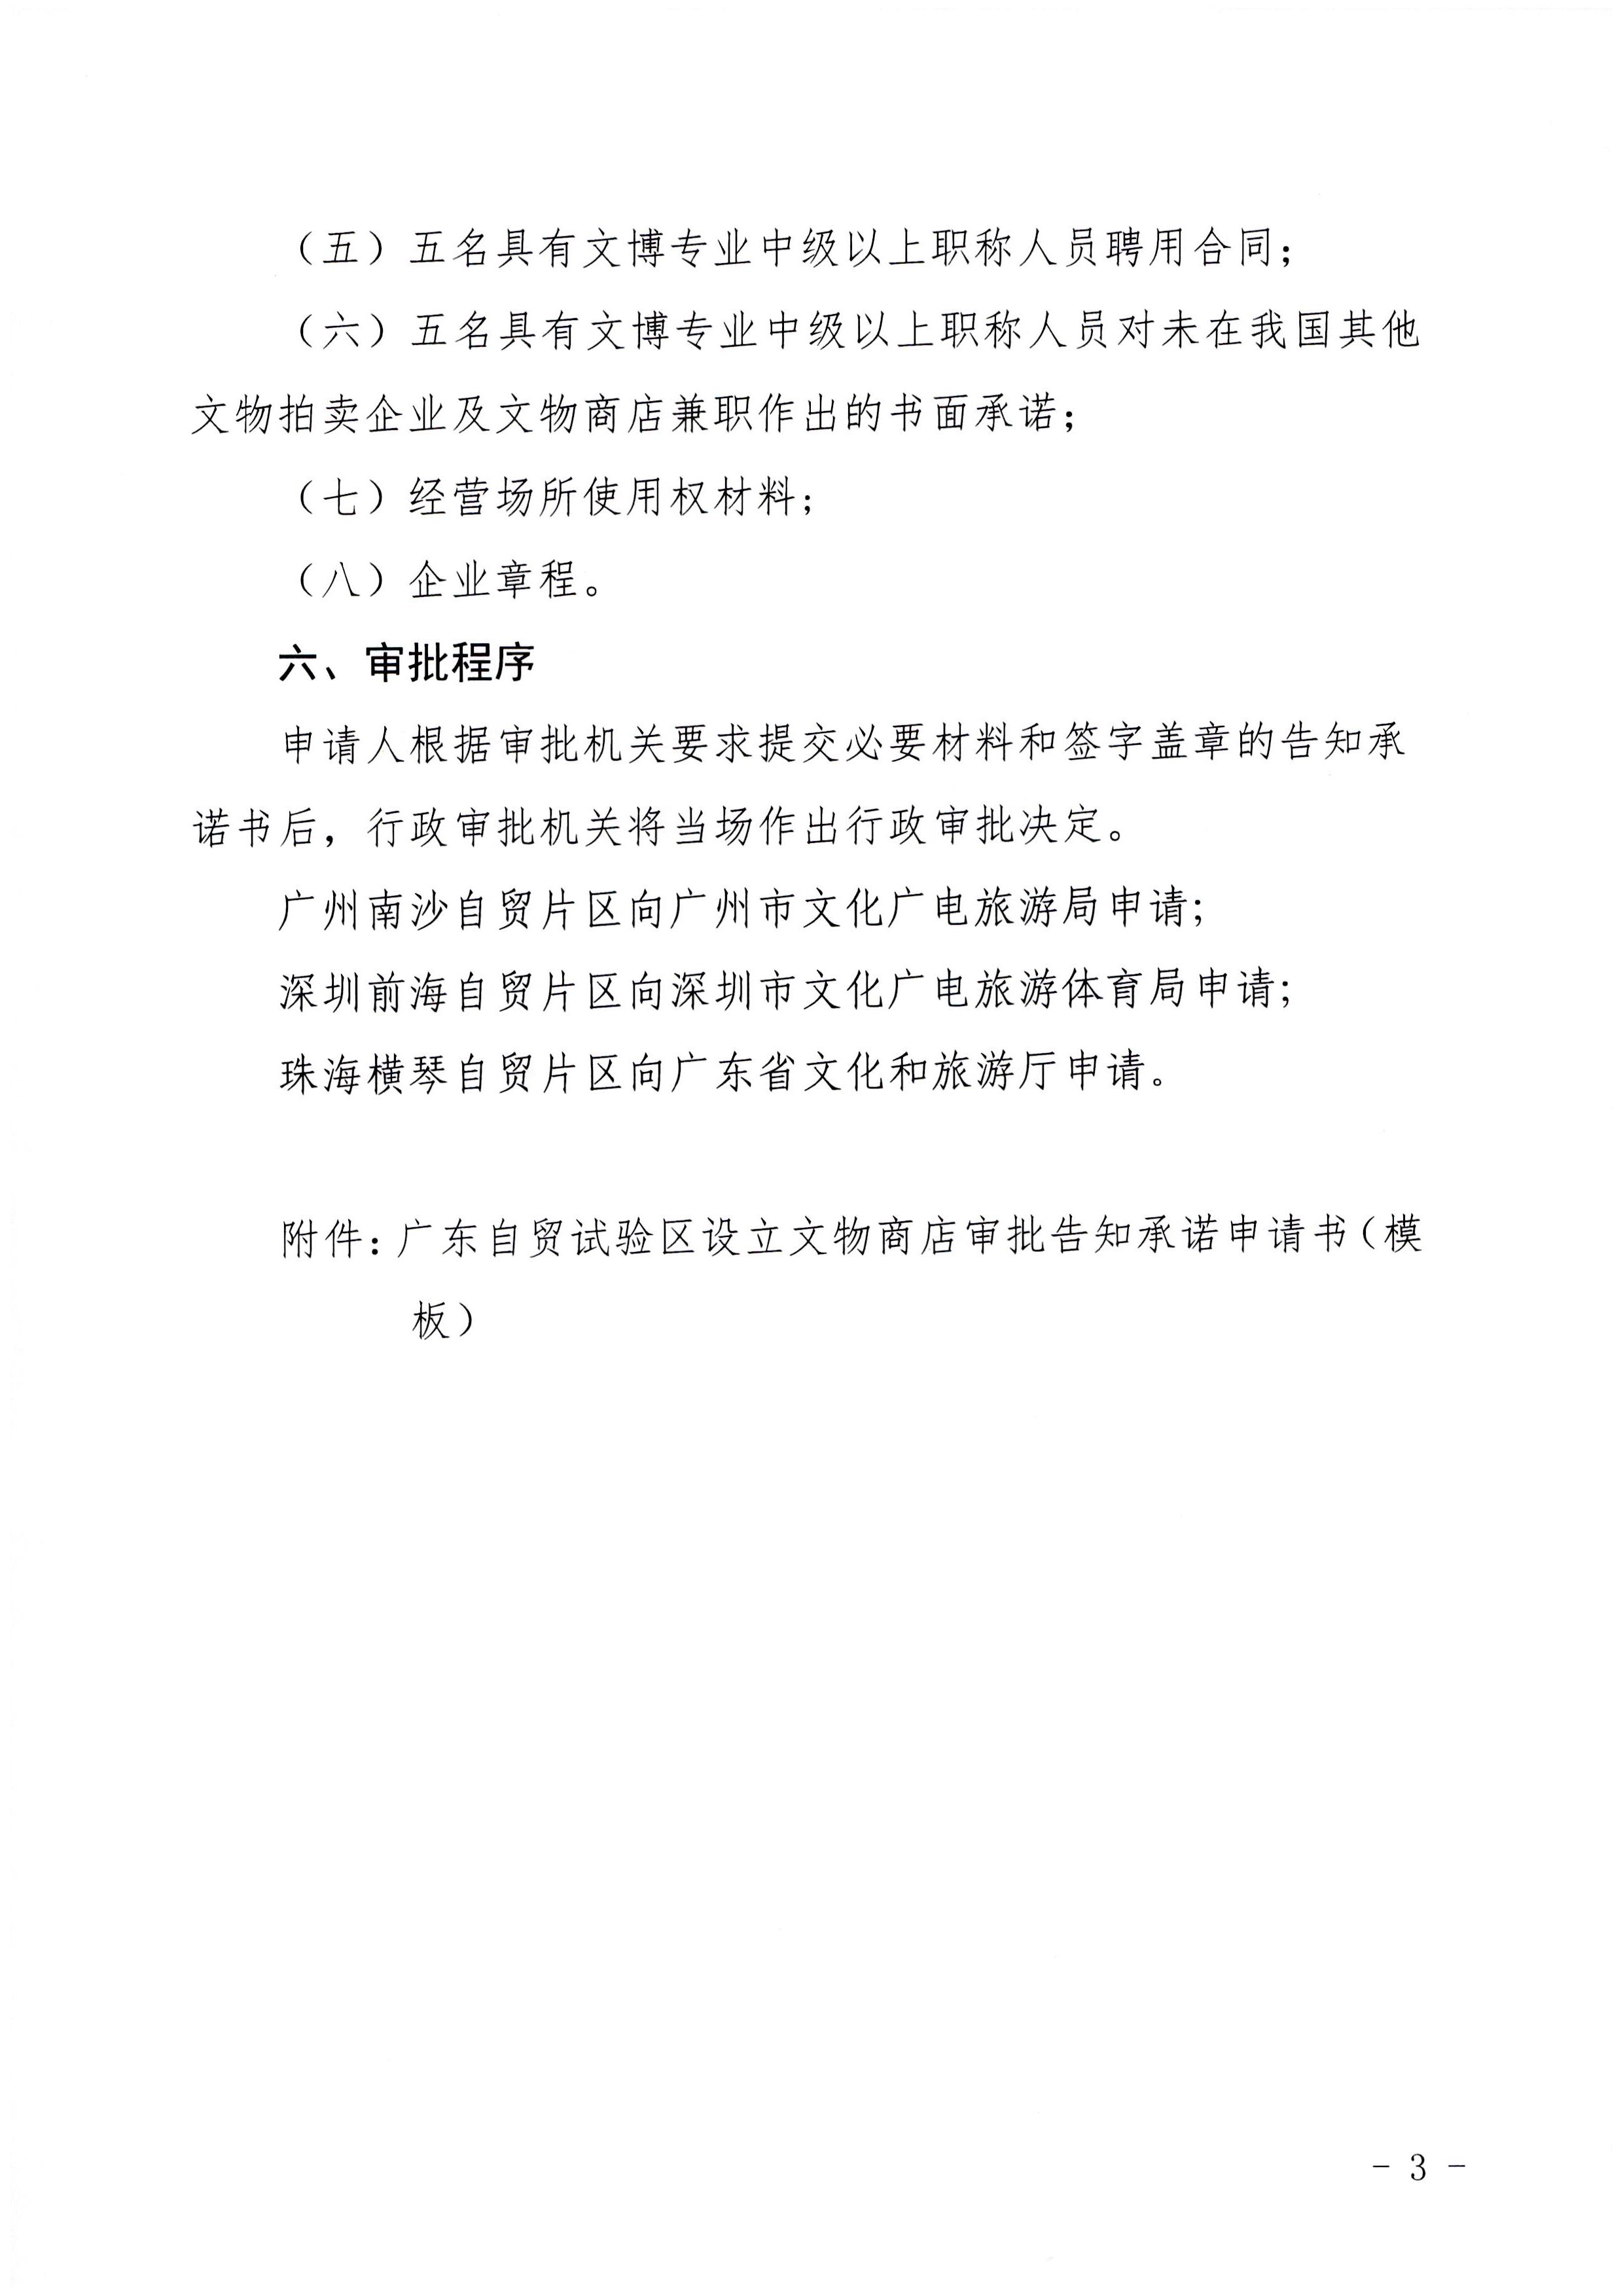 广东省文化和旅游厅印发证照分离改革实施方案的通知_页面_49.jpg